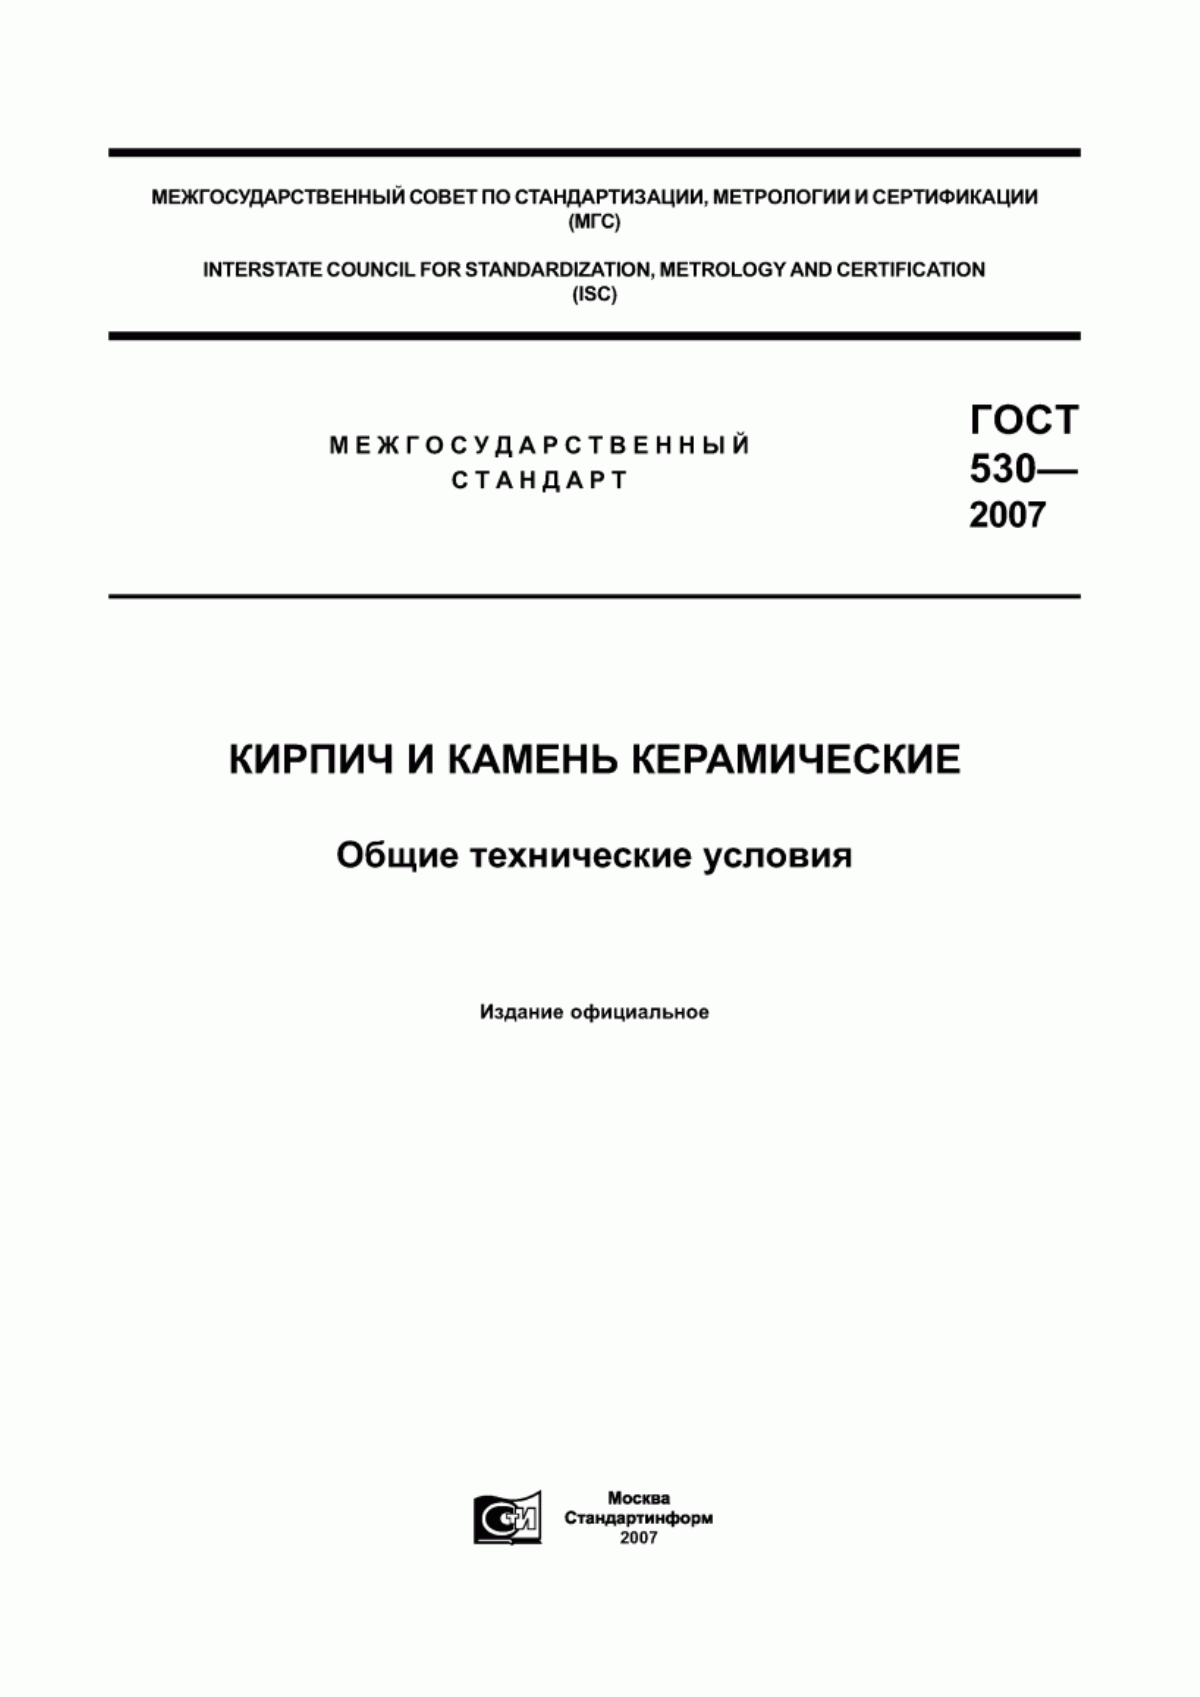 ГОСТ 530-2007 Кирпич и камень керамические. Общие технические условия